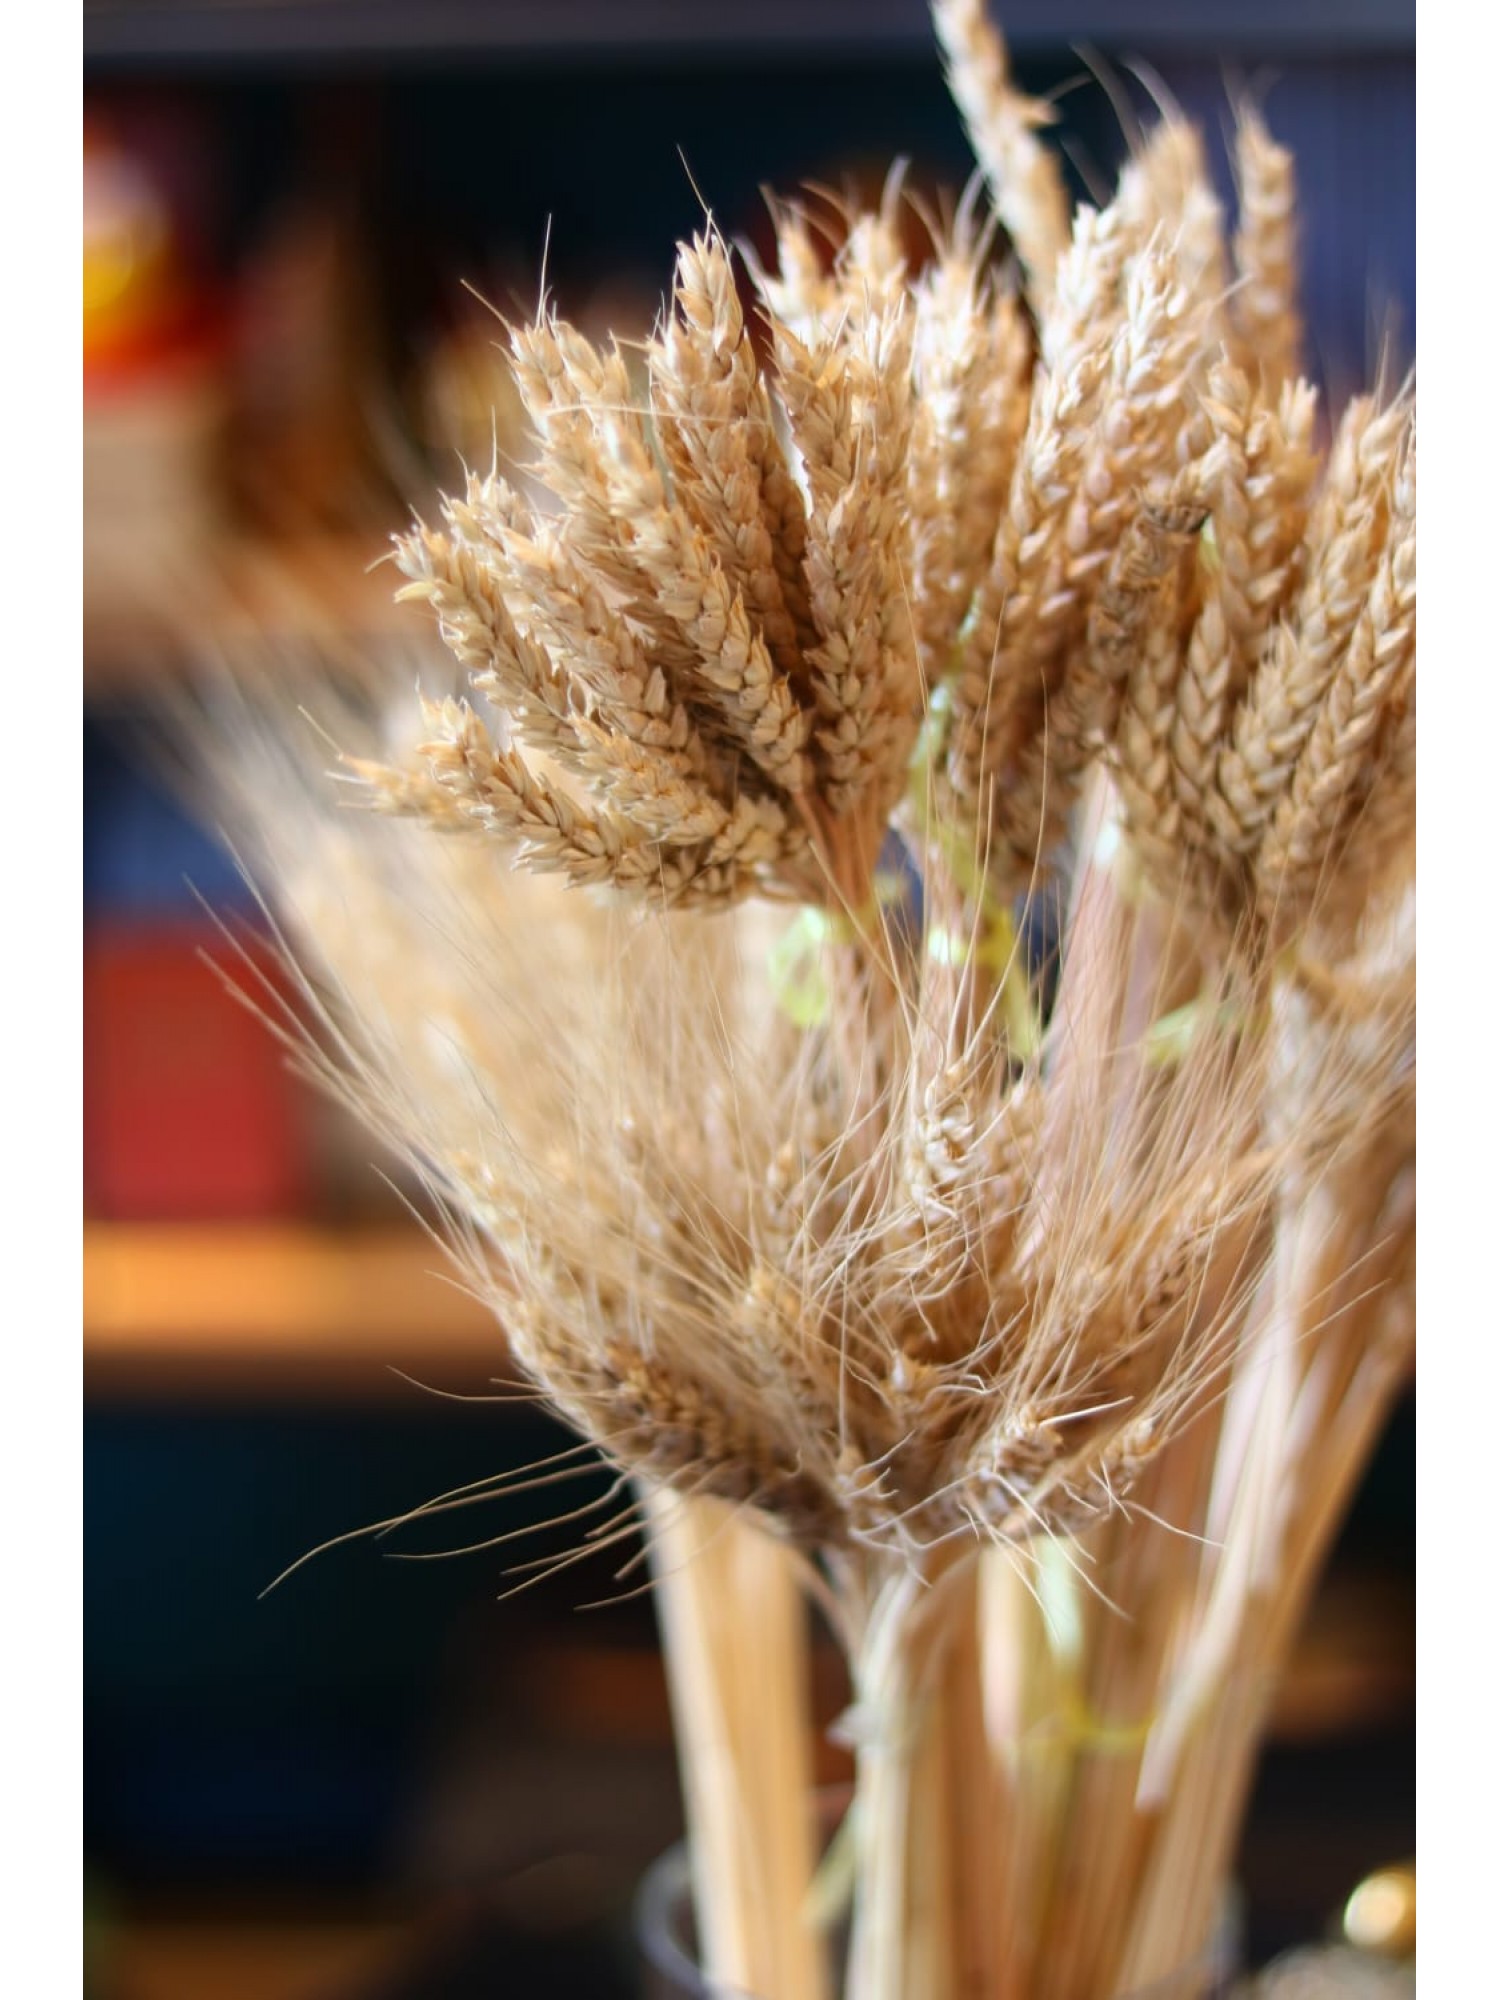 Колосья Пшеницы  - символ достатка и благополучия